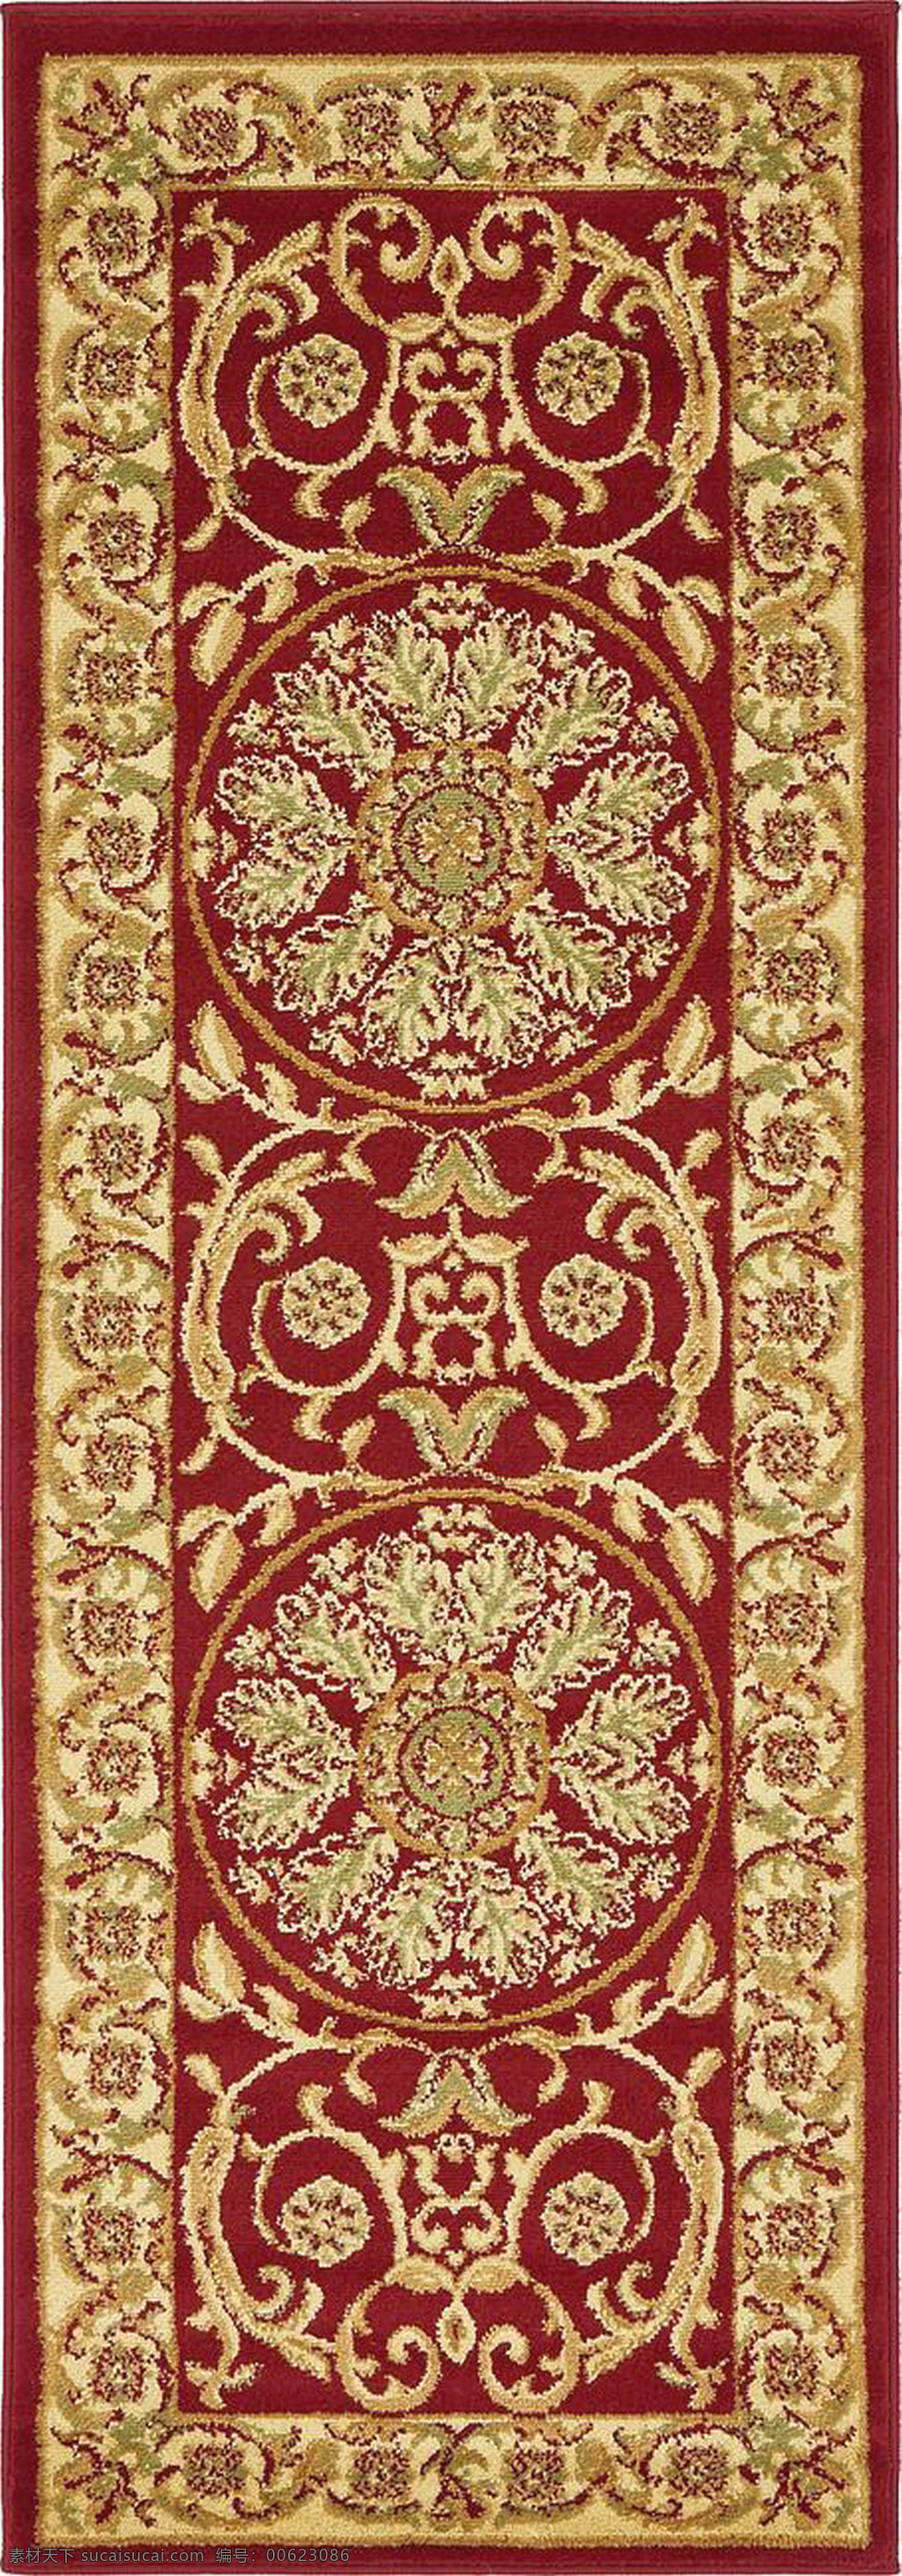 红色 花纹 地毯 贴图 图案 花边 底纹边框 纹边 欧式贴图 红色花纹